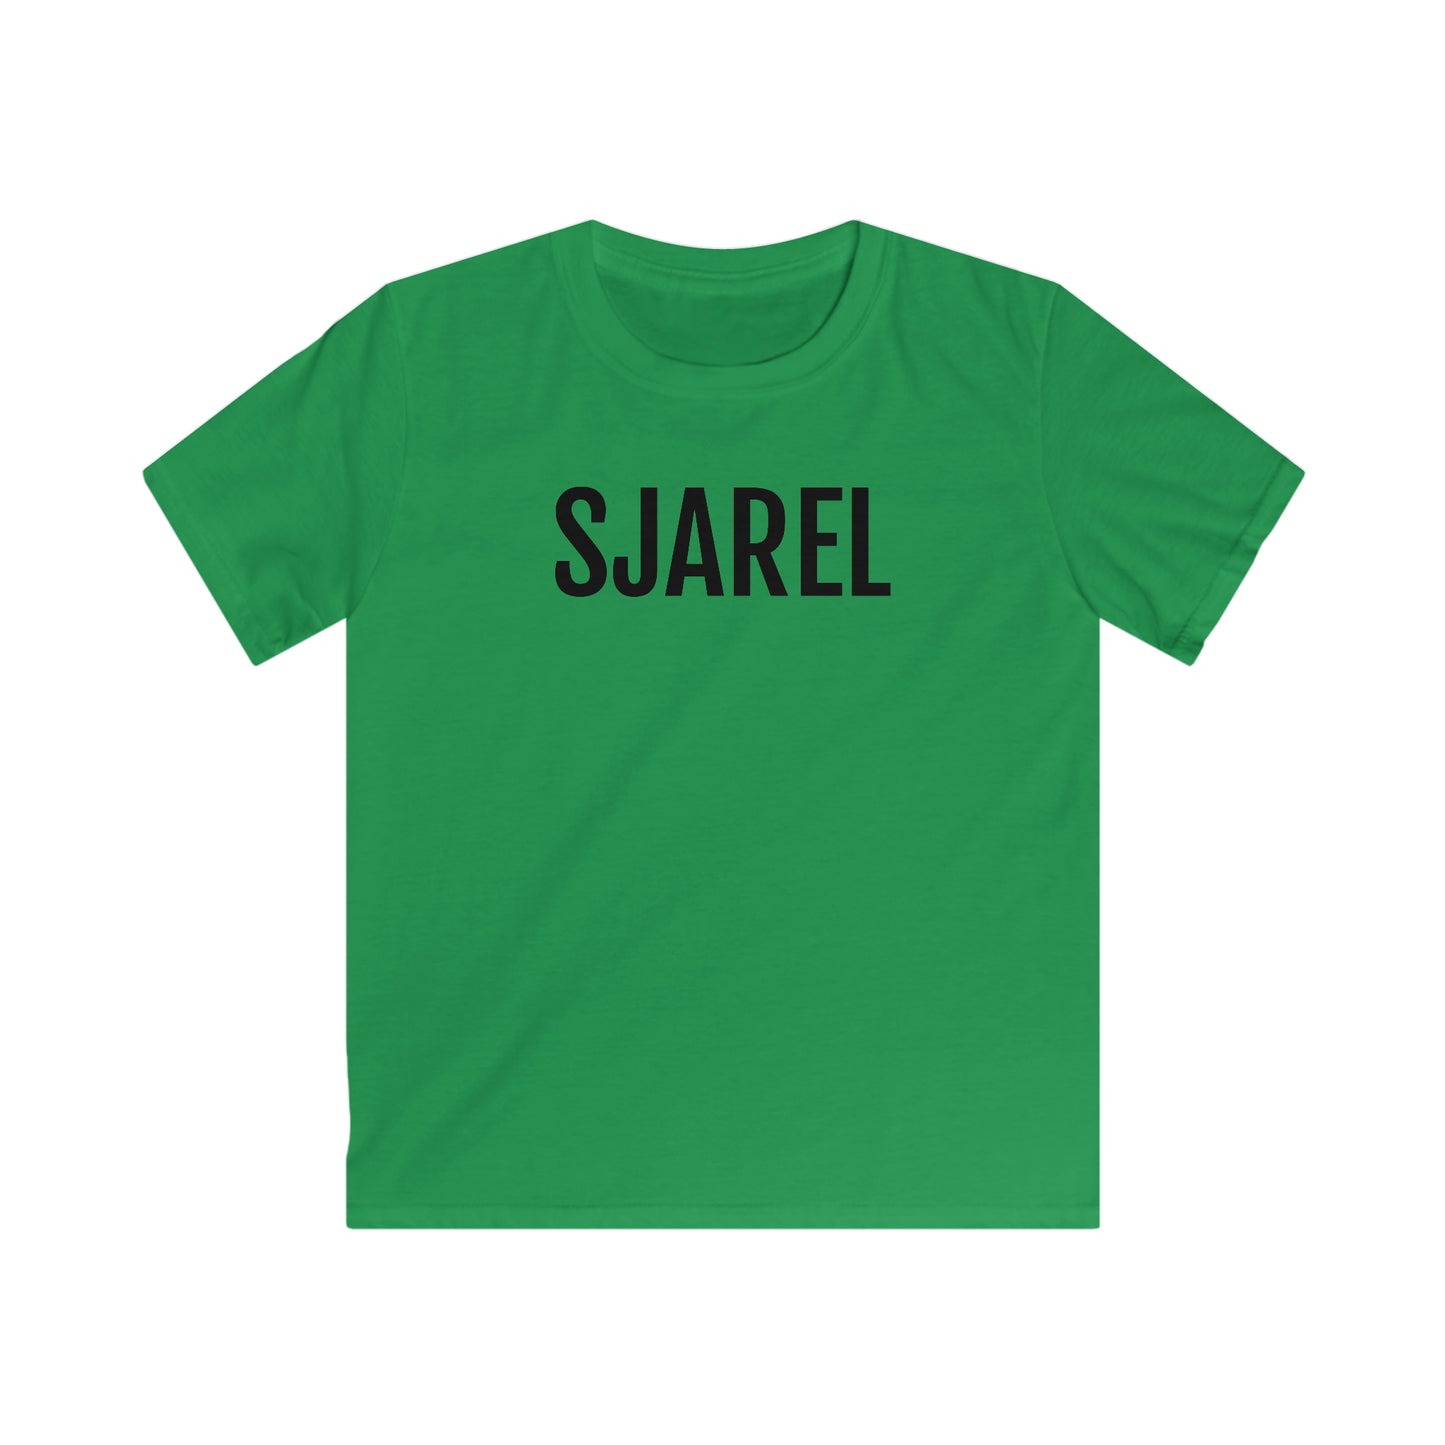 Stijlvol Groen SJAREL T-shirt - Kinderen